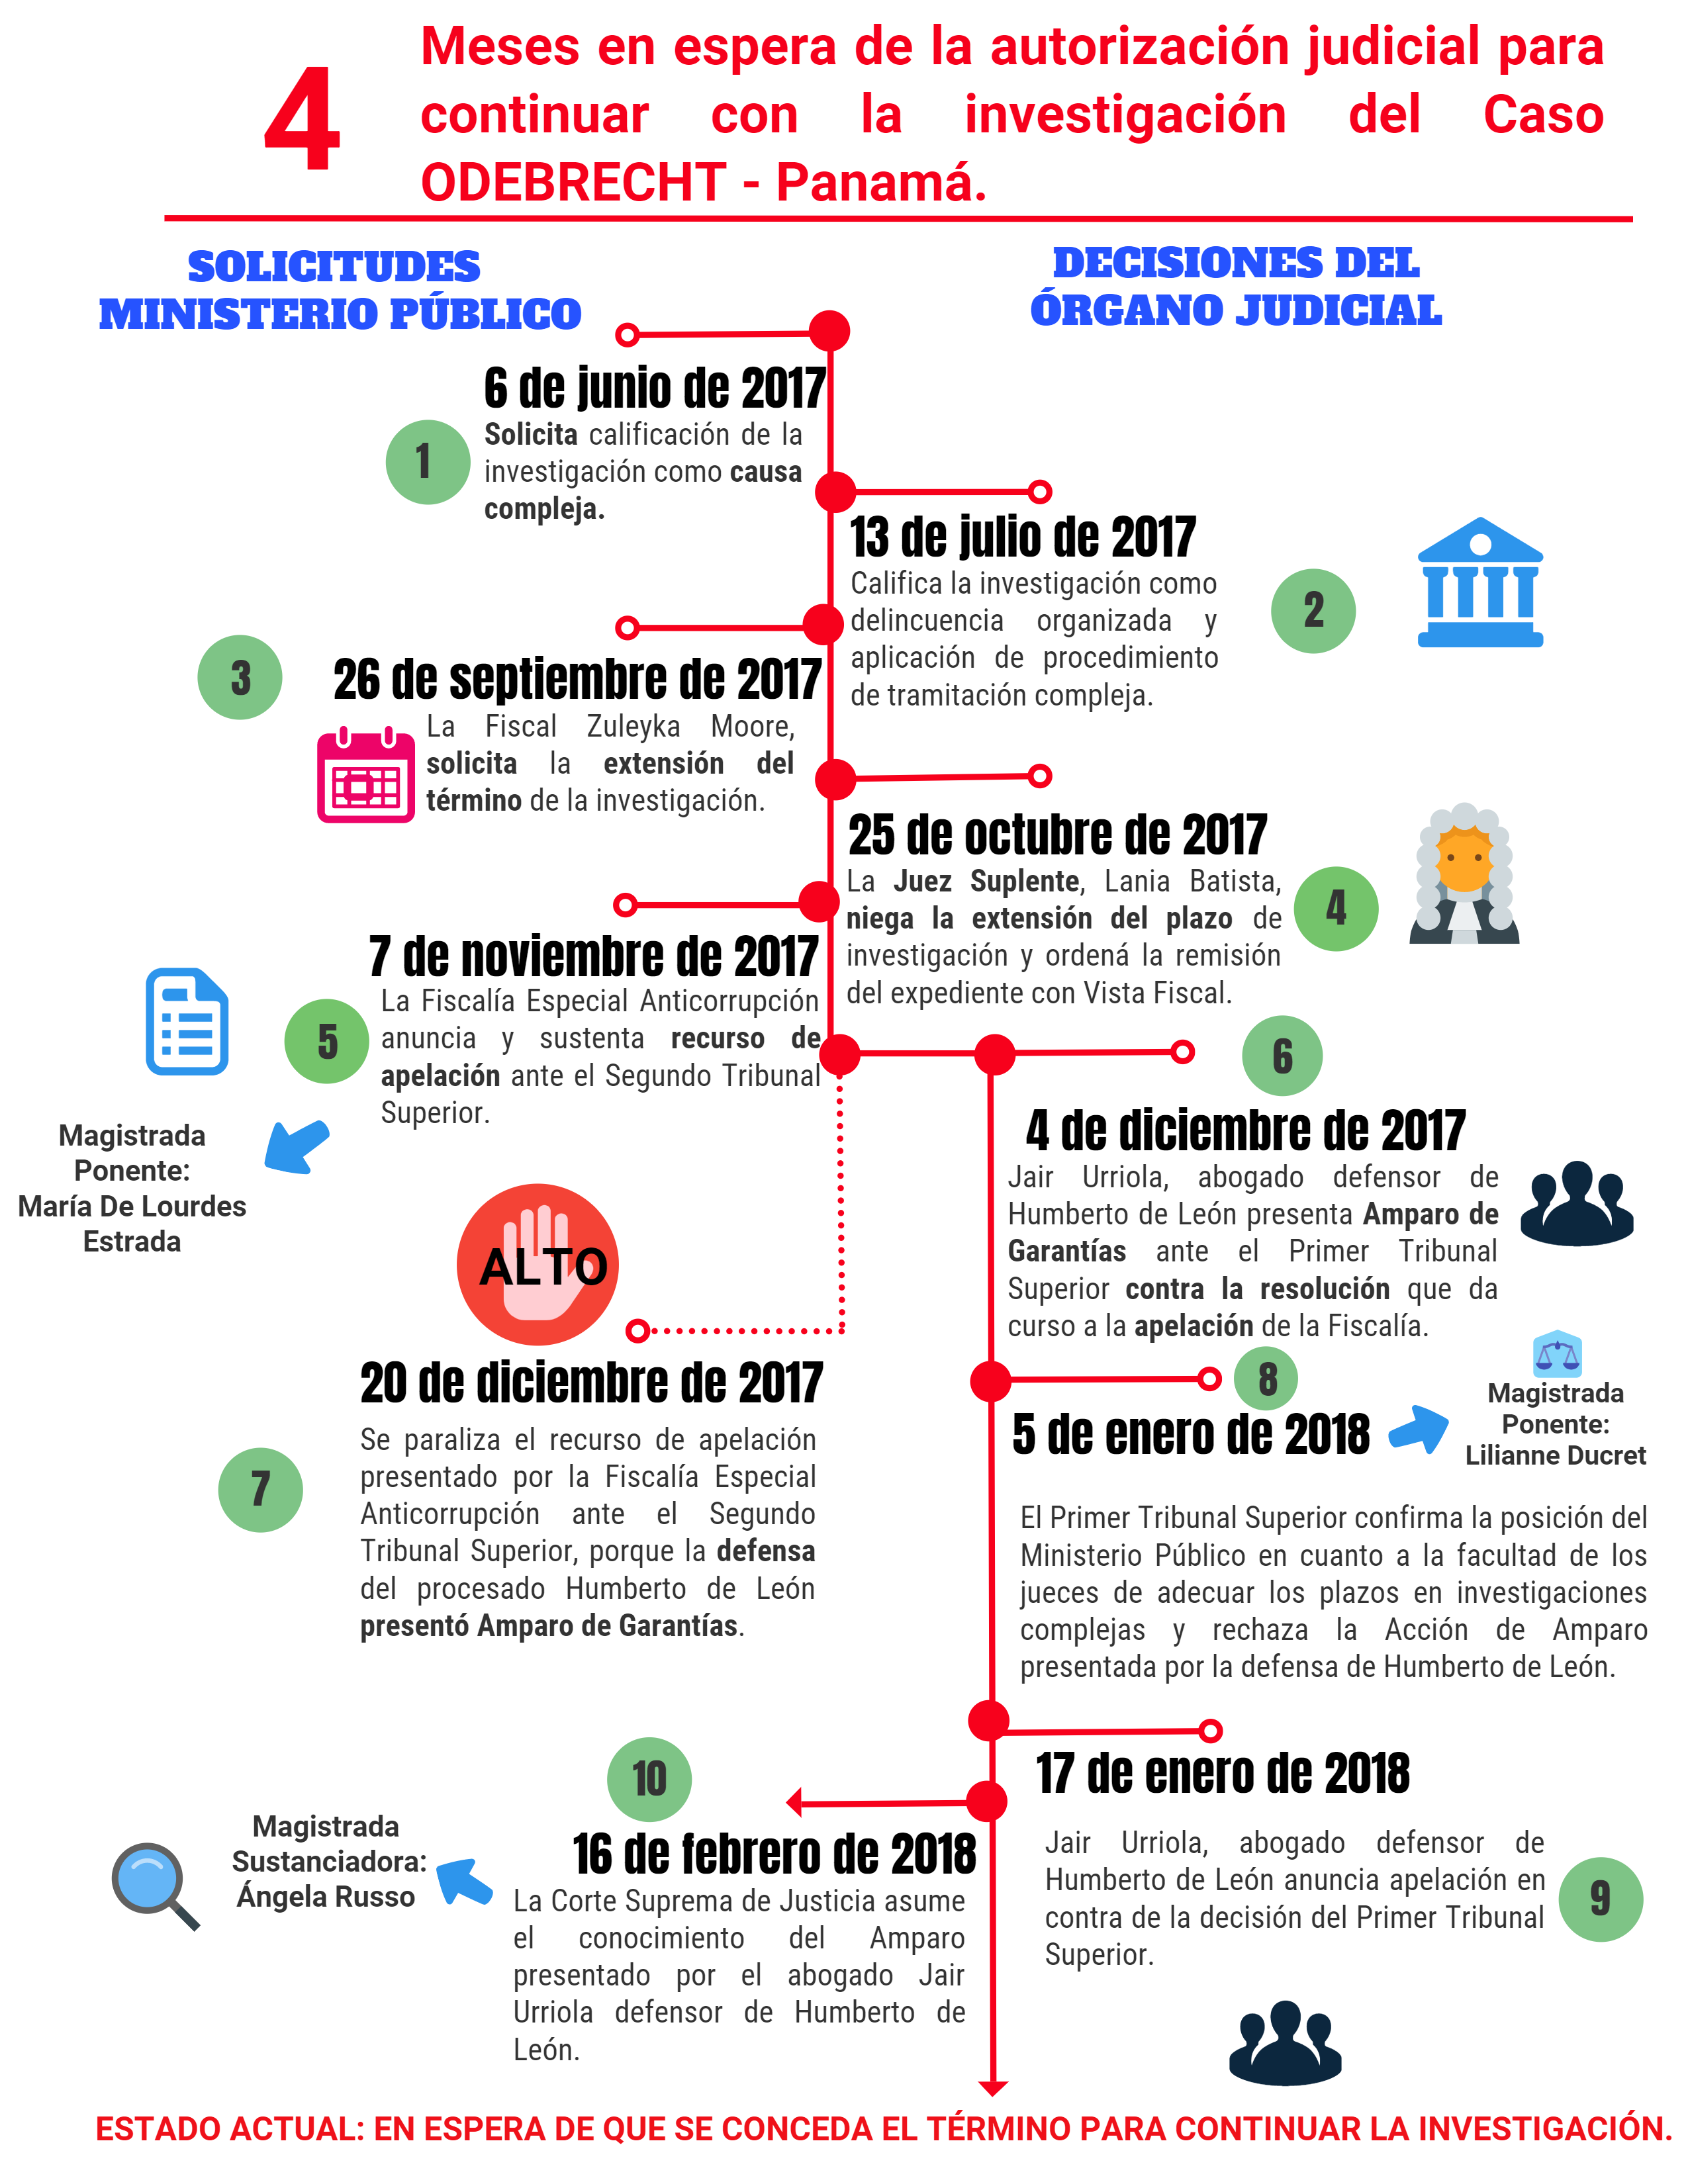 4 Meses en espera de la autorización judicial para continuar con la investigación del Caso Odebrecht – Panamá